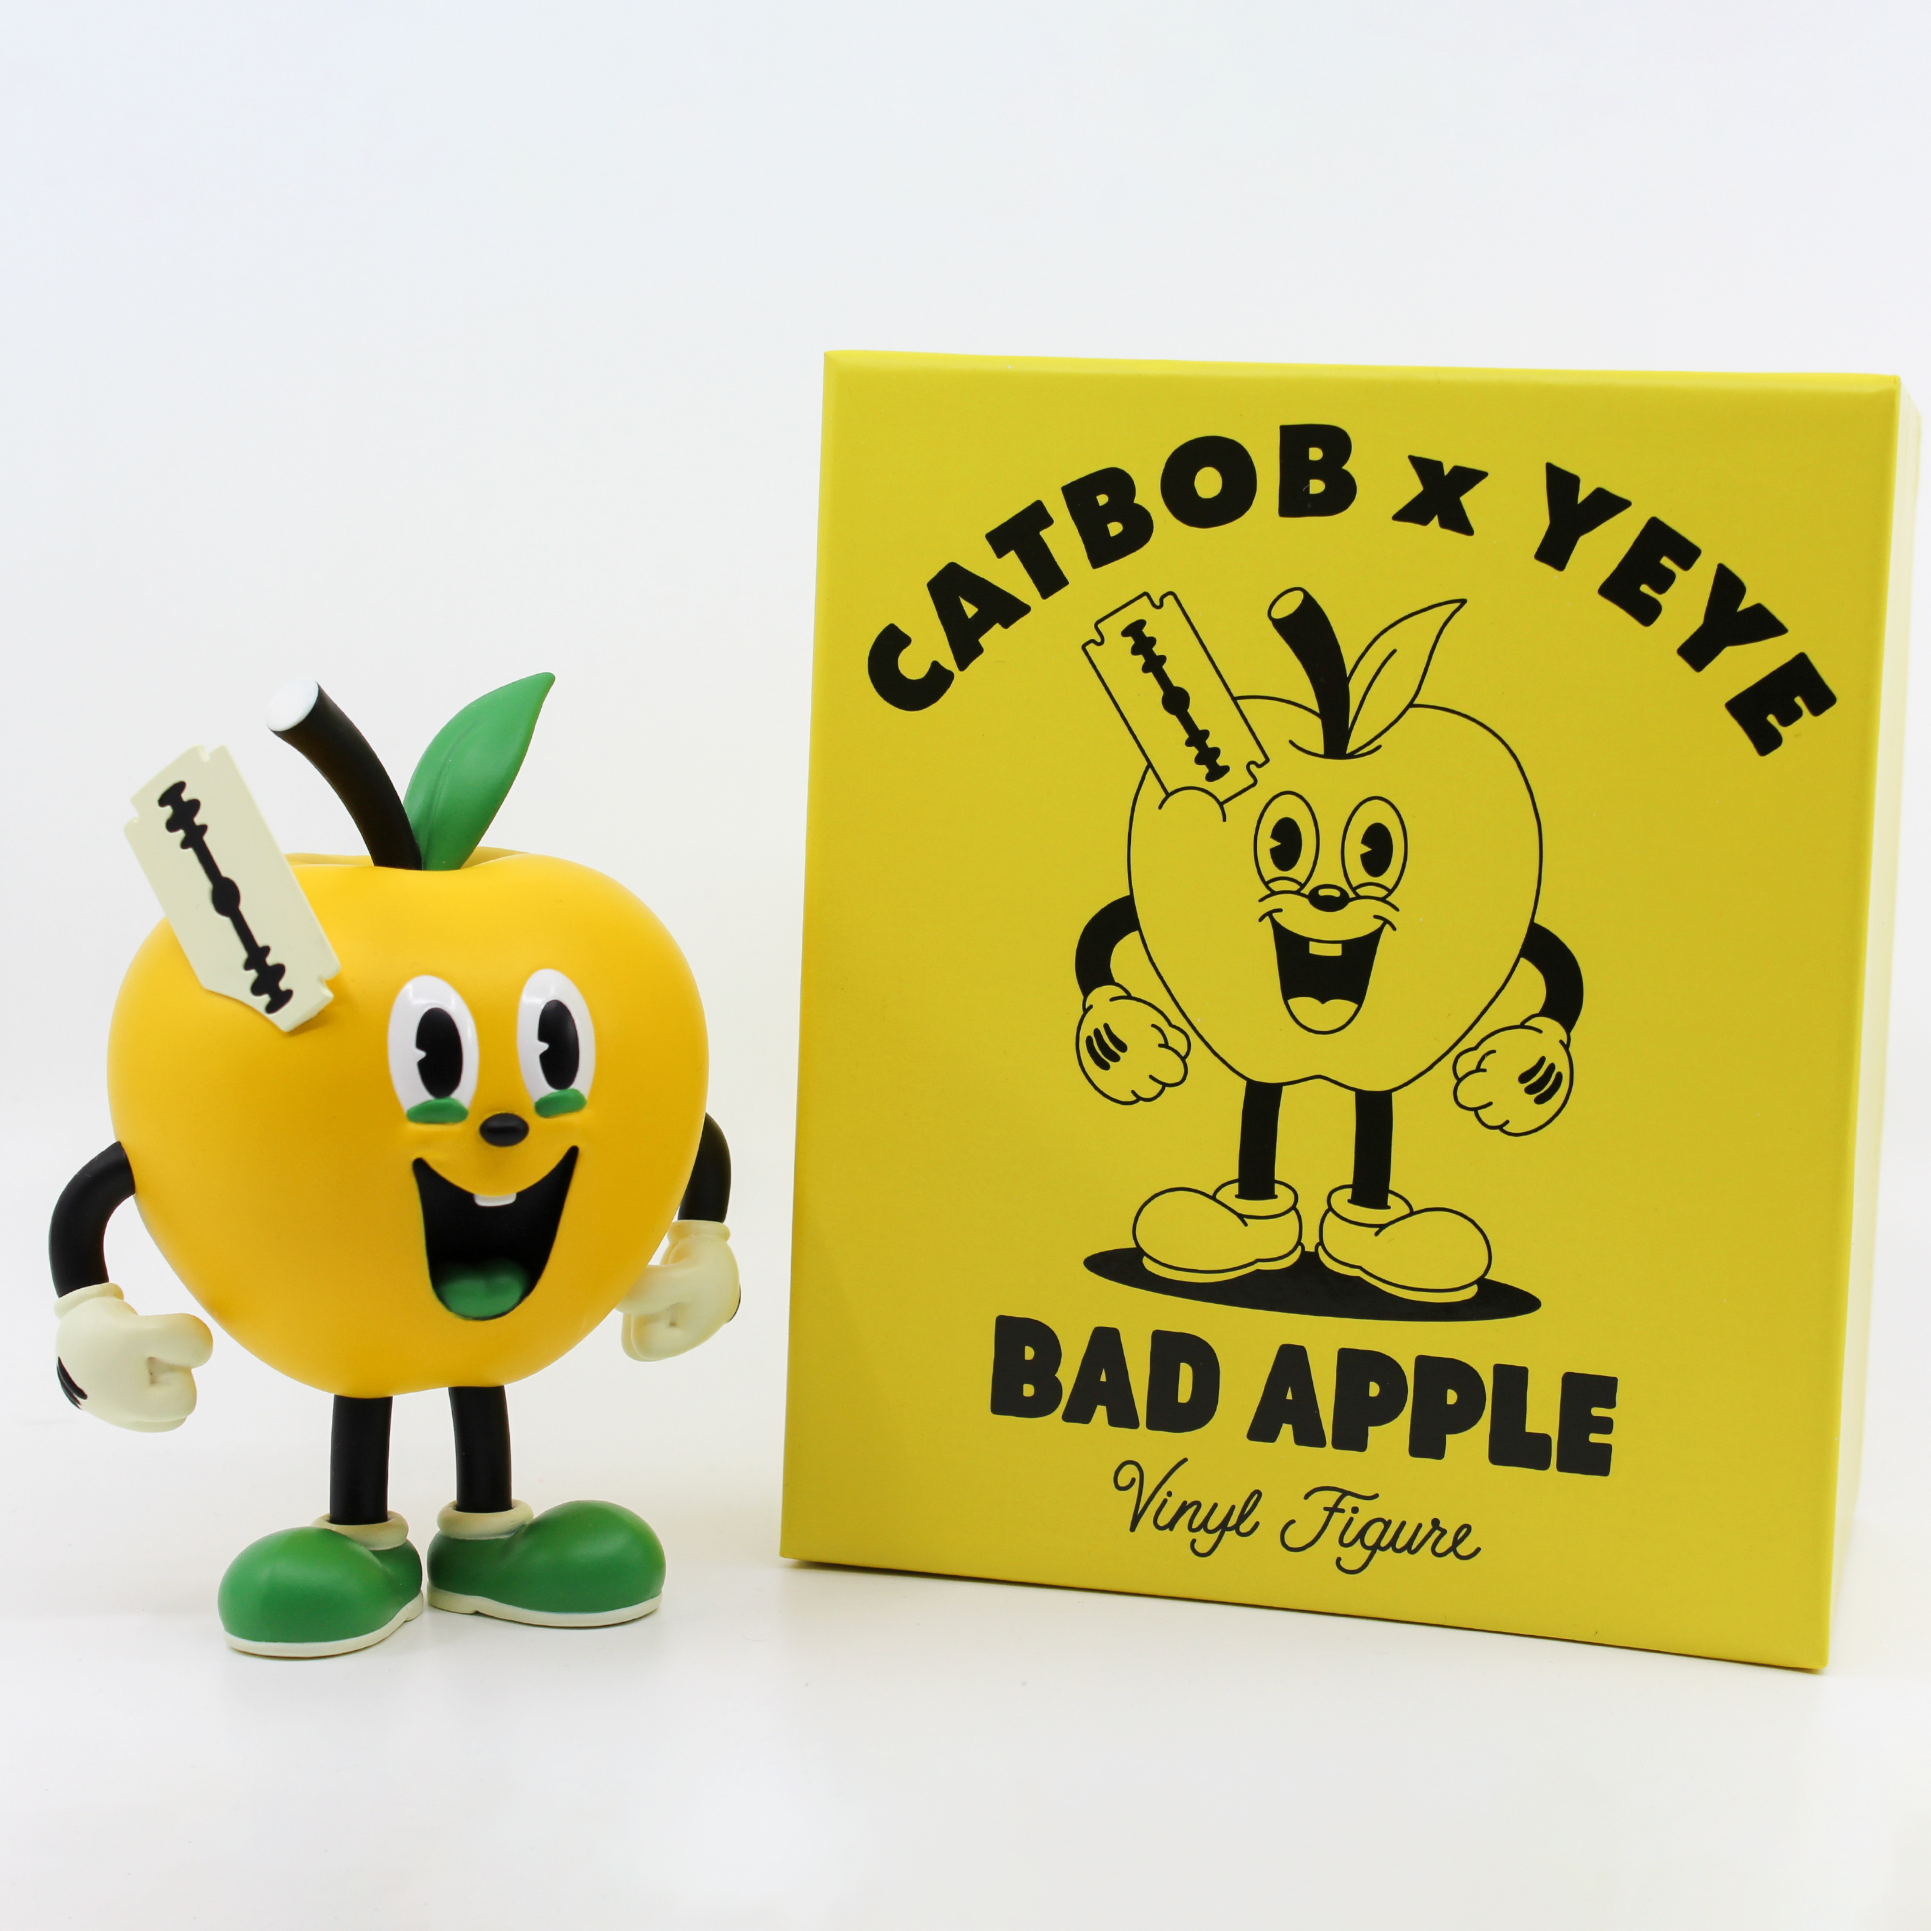 Bad Apple Vinyl Figure